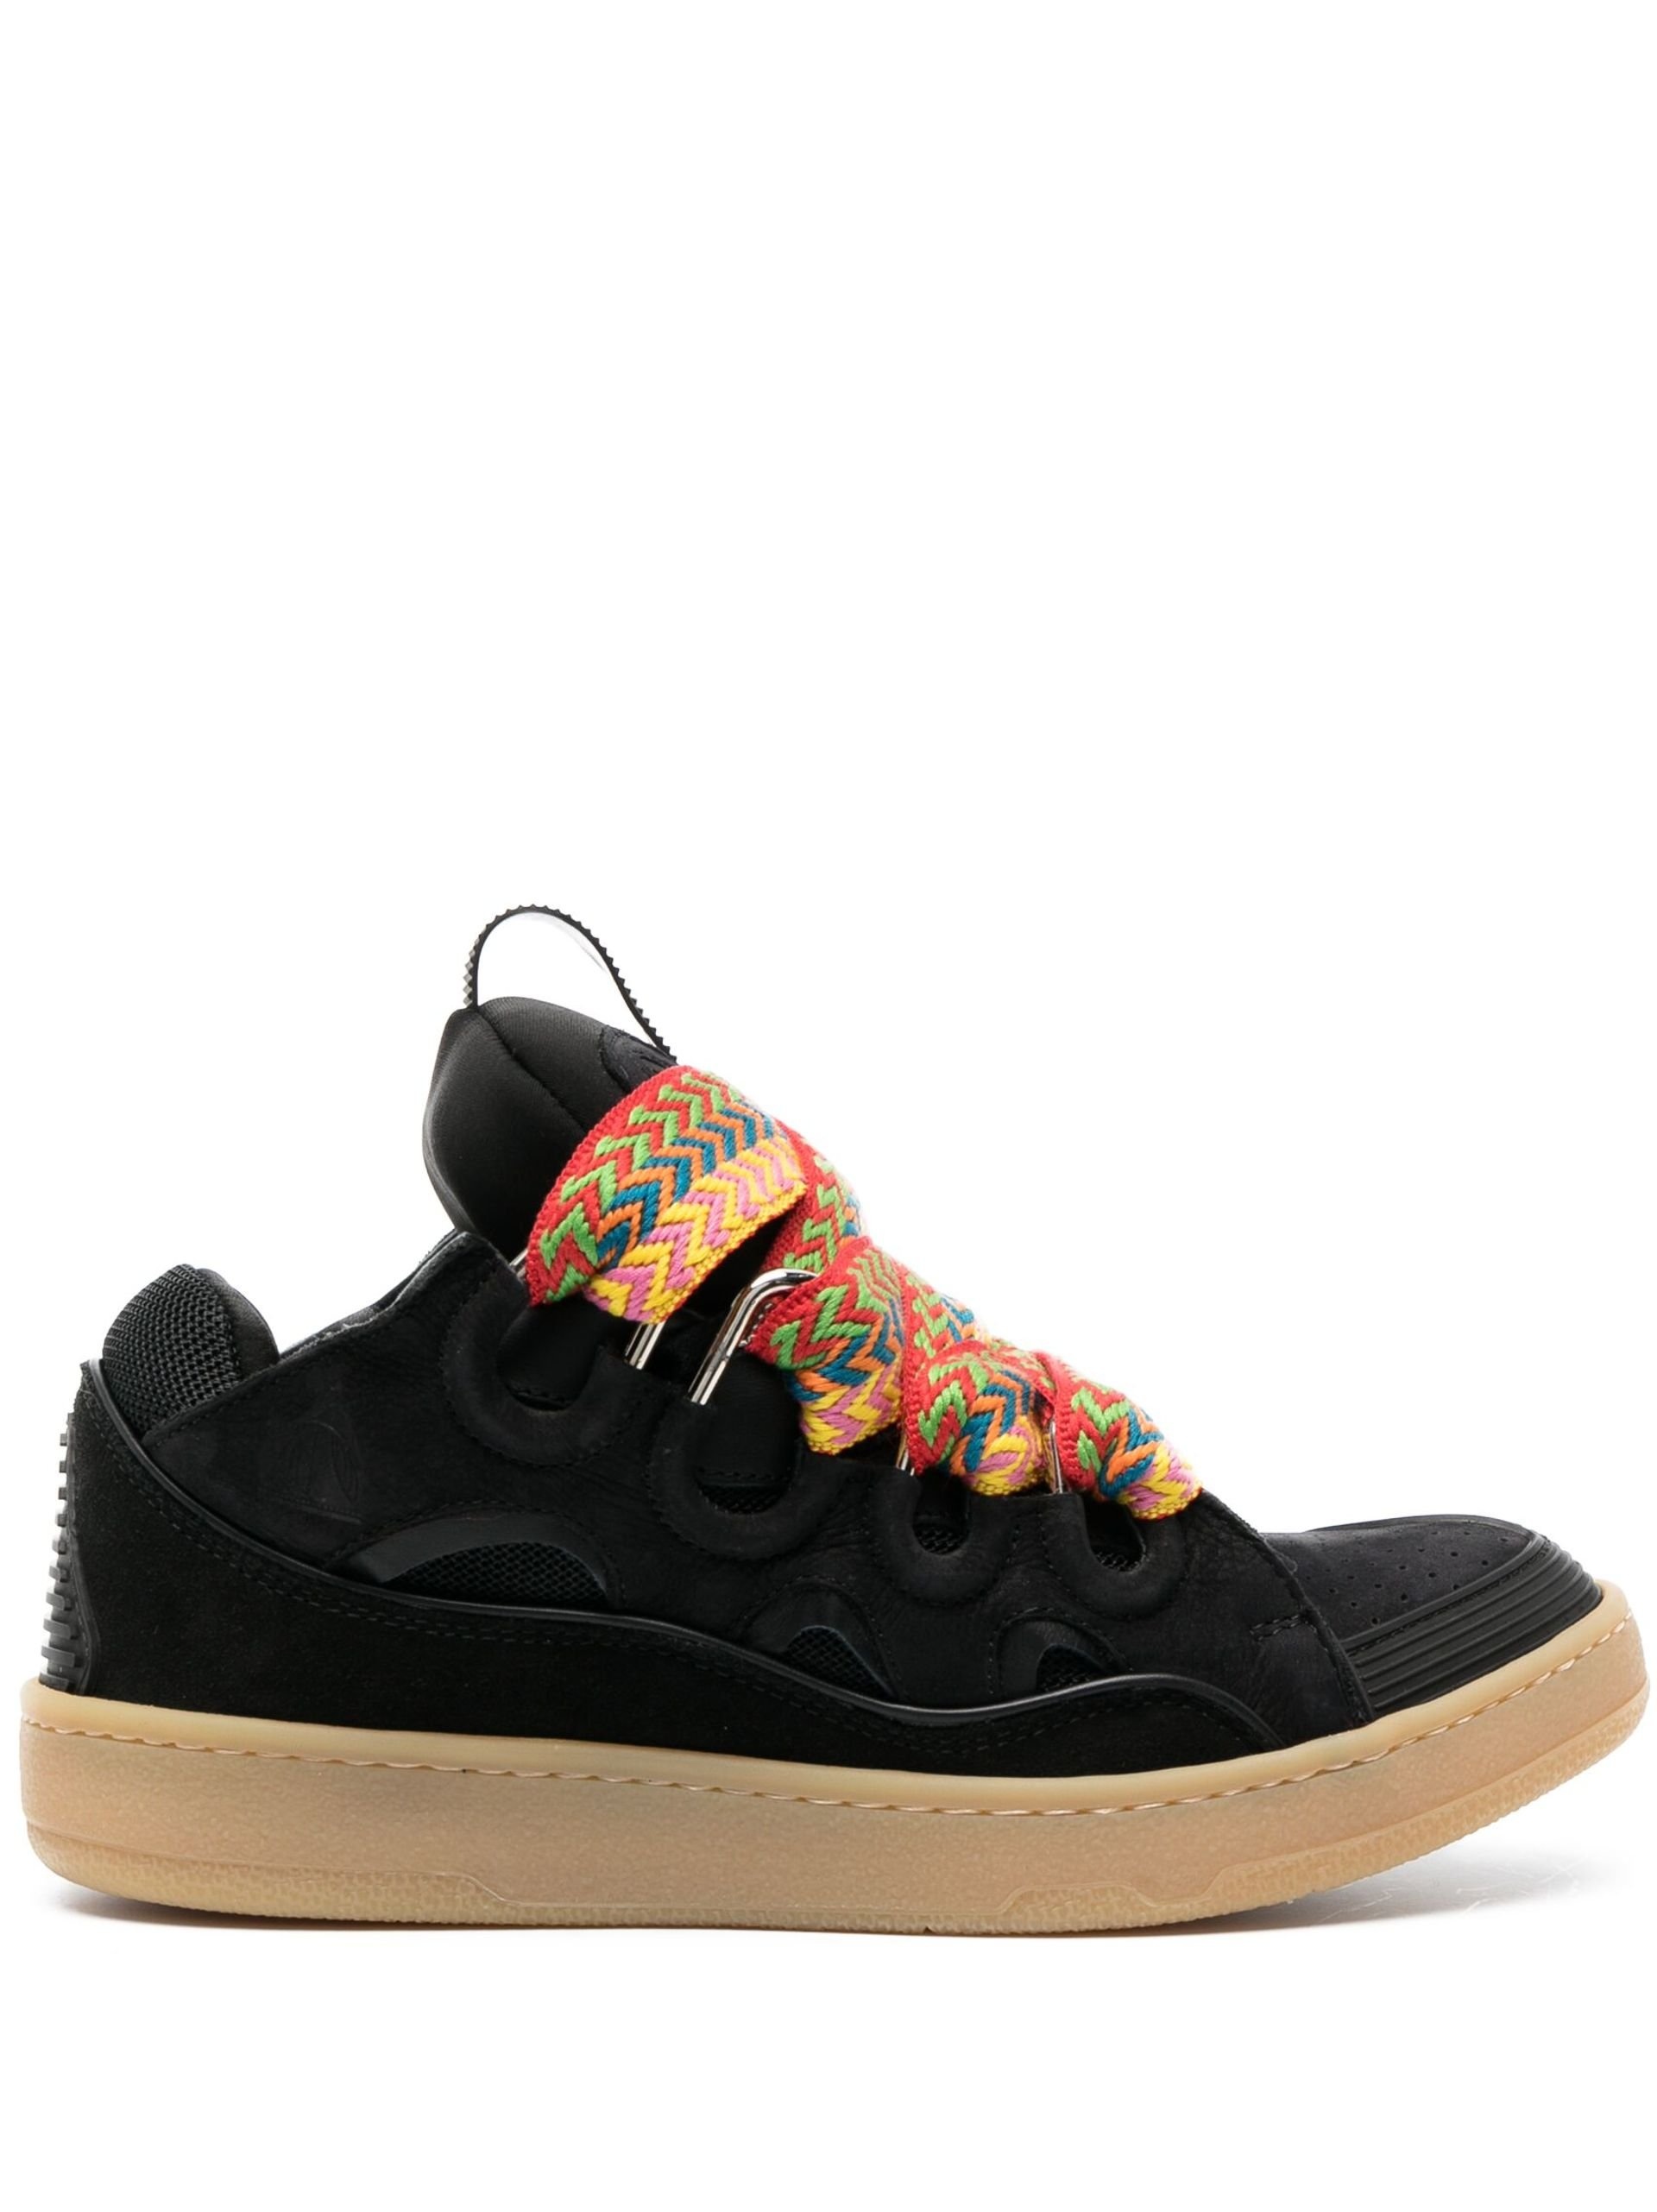 Black Curb Suede Sneakers - 1